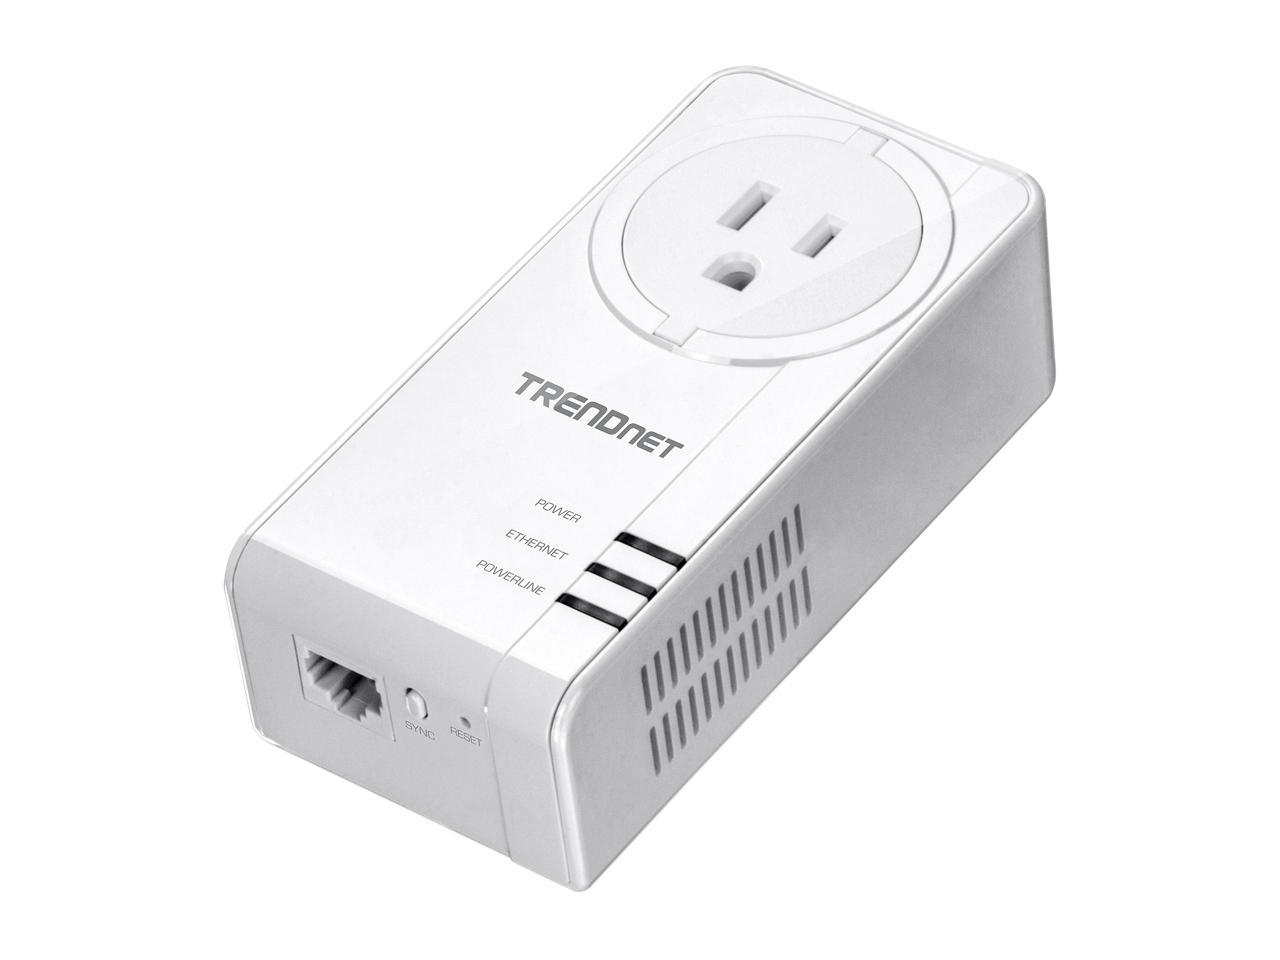 TRENDnet TPL-423E2K Powerline 1300 AV2 Adapter Kit with Built-in Outlet, Gigabit Port, IEEE 1905.1 & IEEE 1901, Homeplug AV2 (2-Pack)